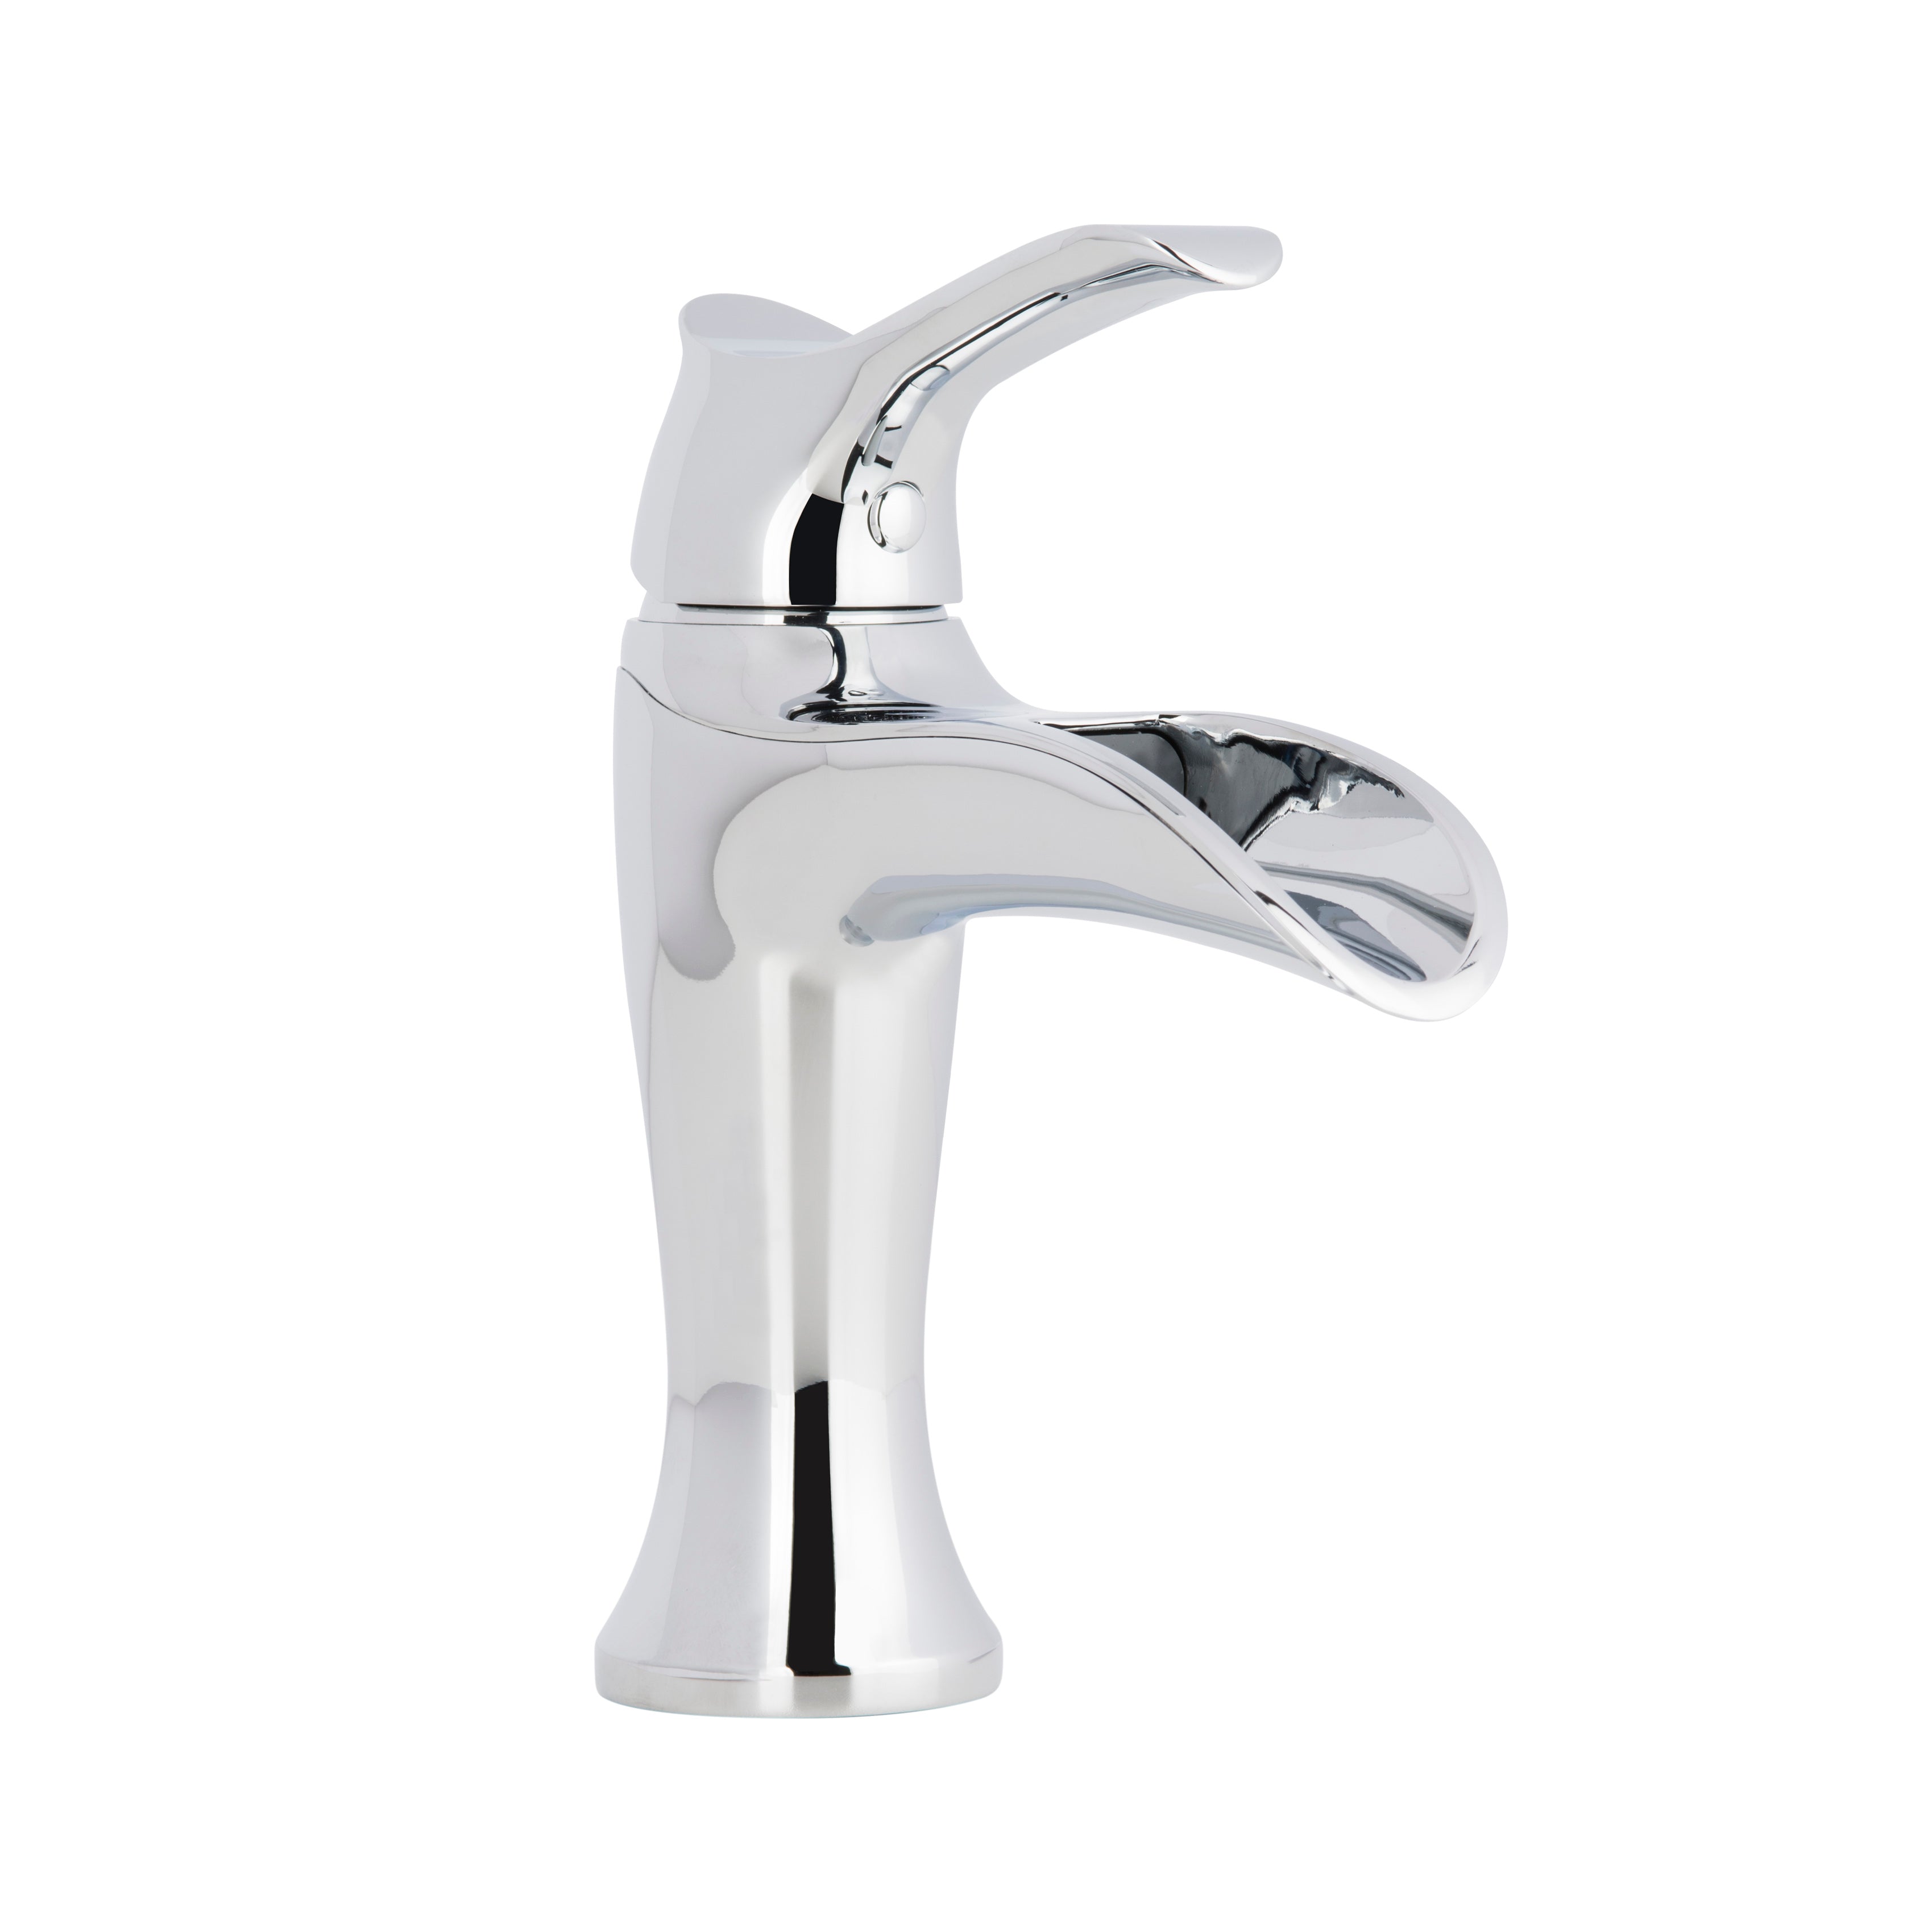 Eleganzia Series Single Lever Chrome Bathroom Faucet